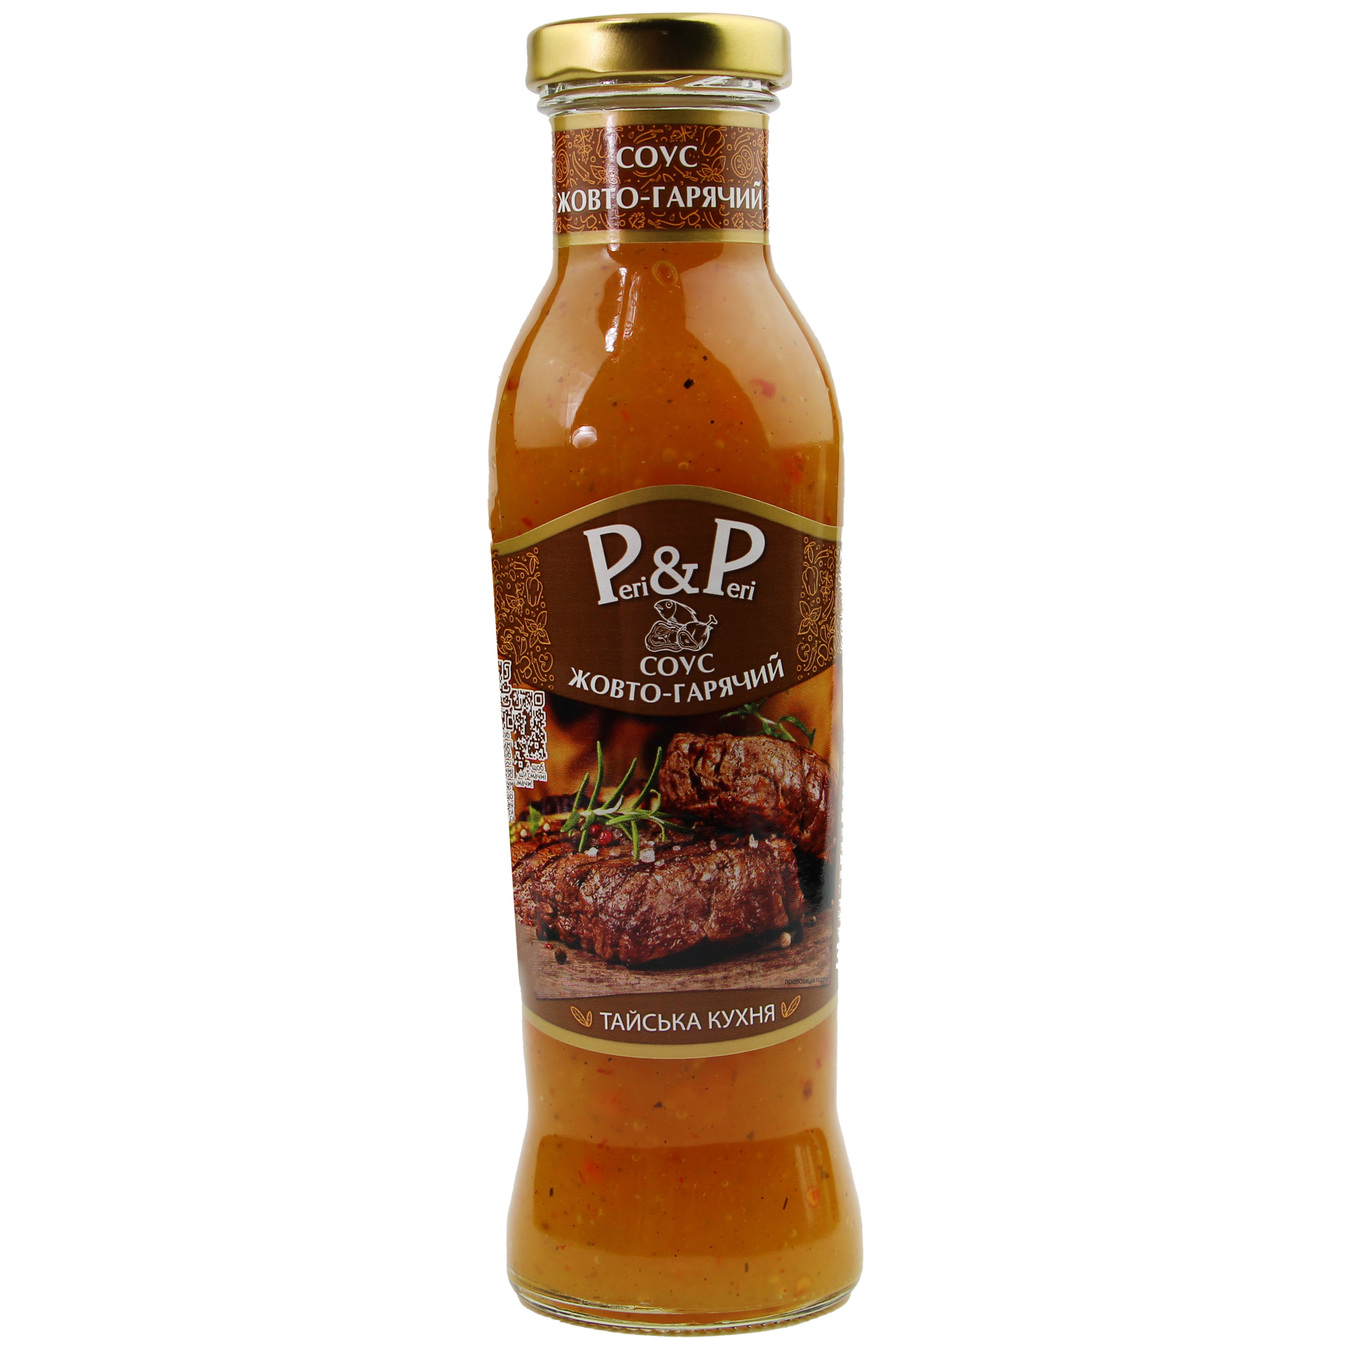 PERI&PERI Yellow-Hot Sauce 310g